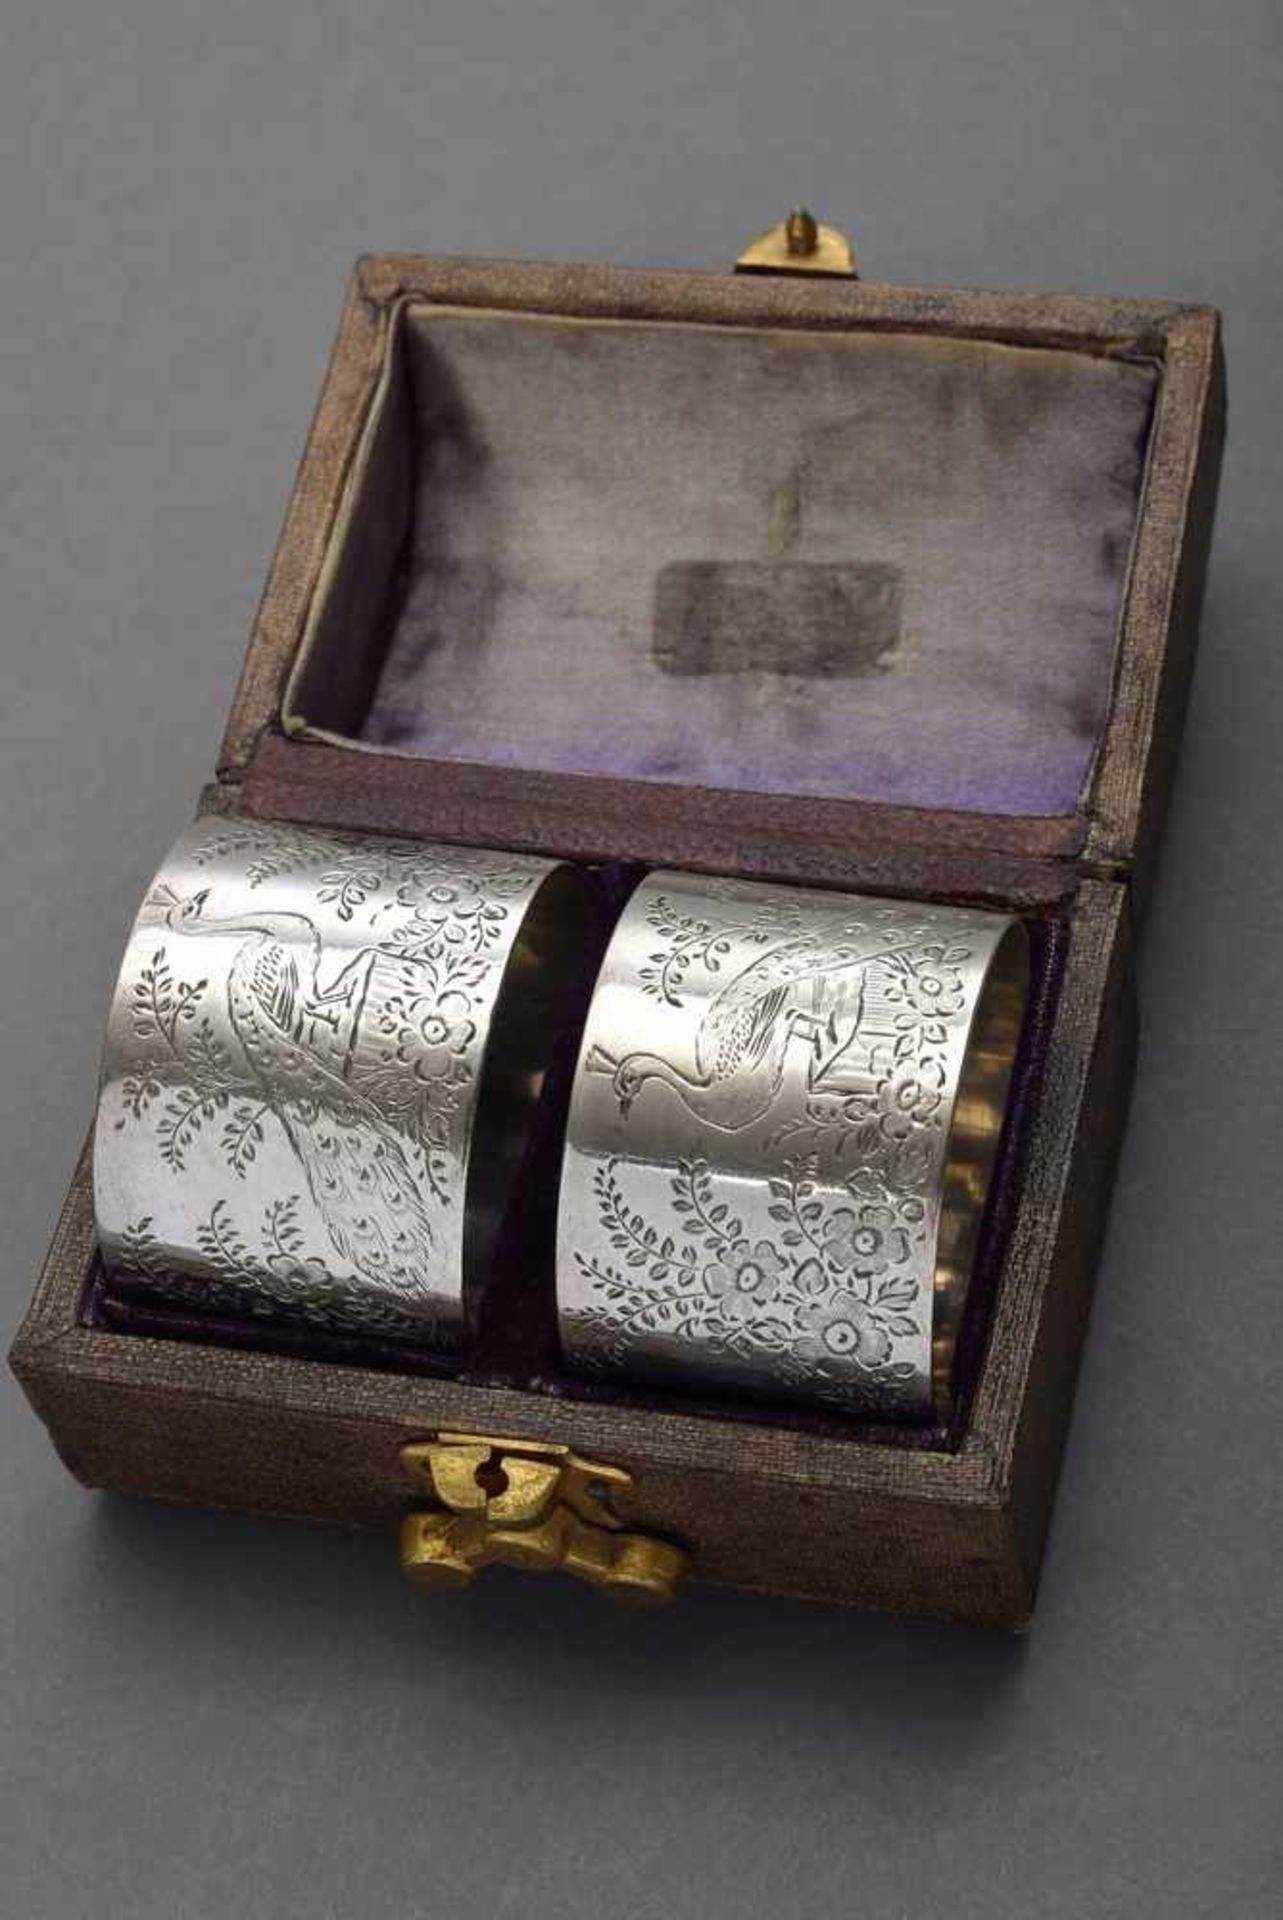 2 Fein gravierte Serviettenringe "Pfauen" in Etui, London 1889, Silber, 55,2g, 3x4cm2 Fine